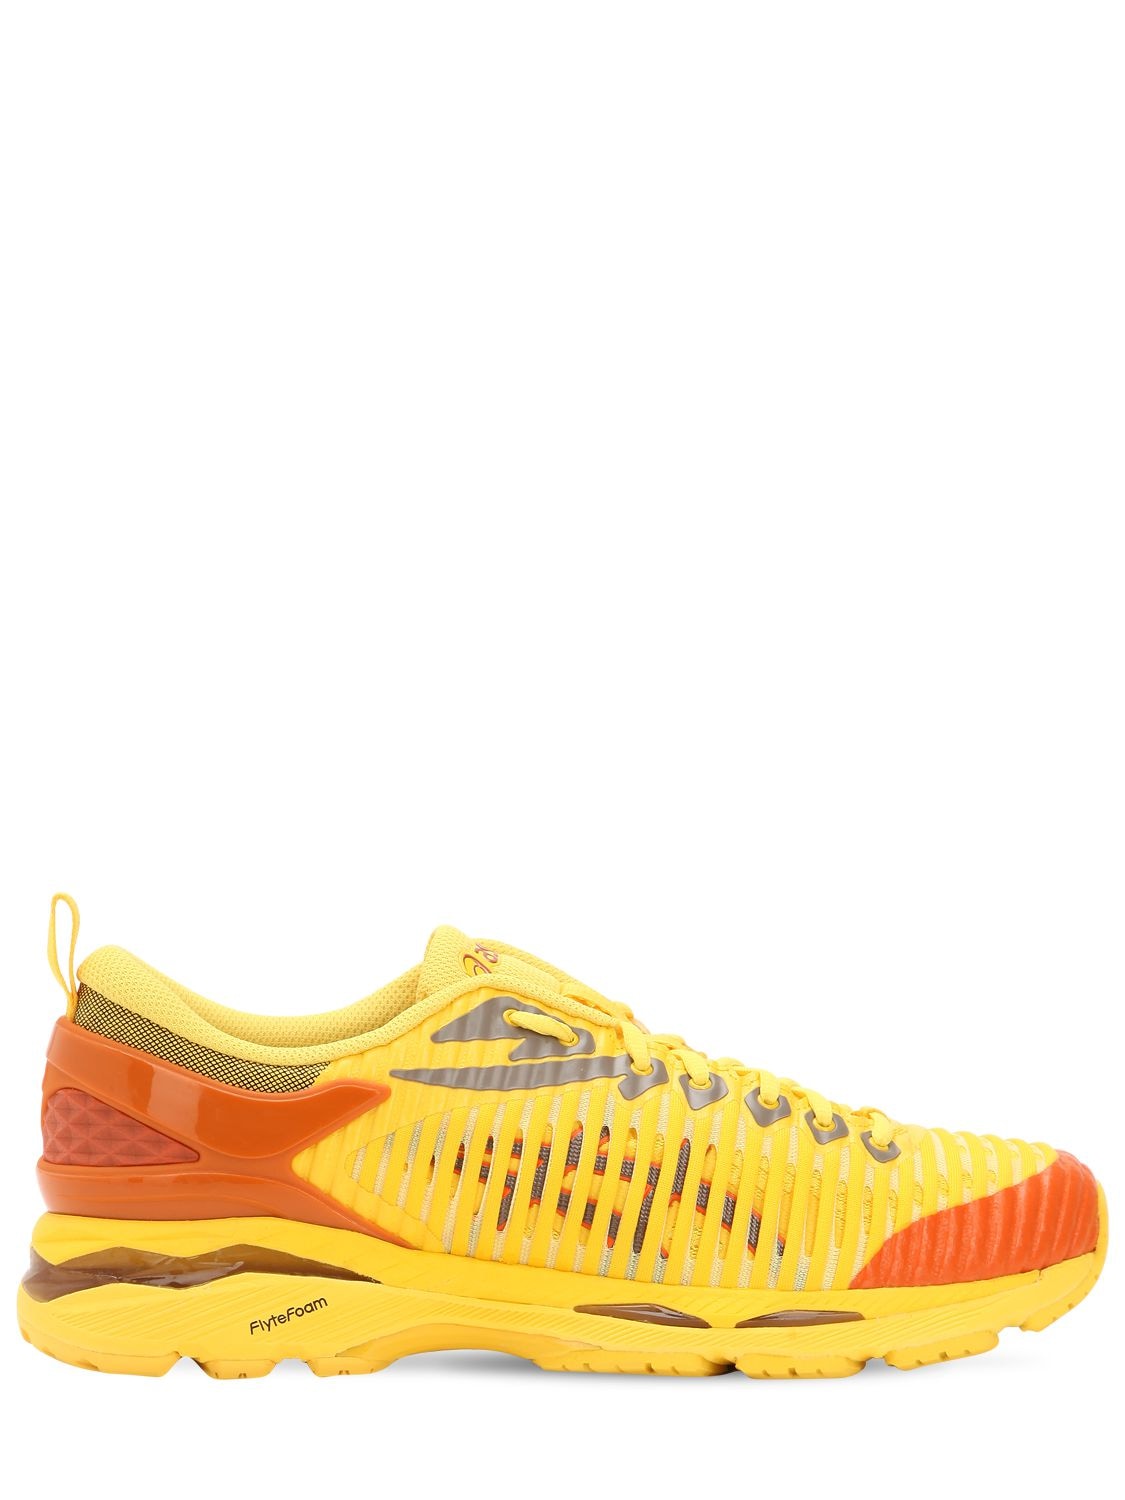 Asics Kiko Kostadinov Gel-delva Sneakers In Yellow